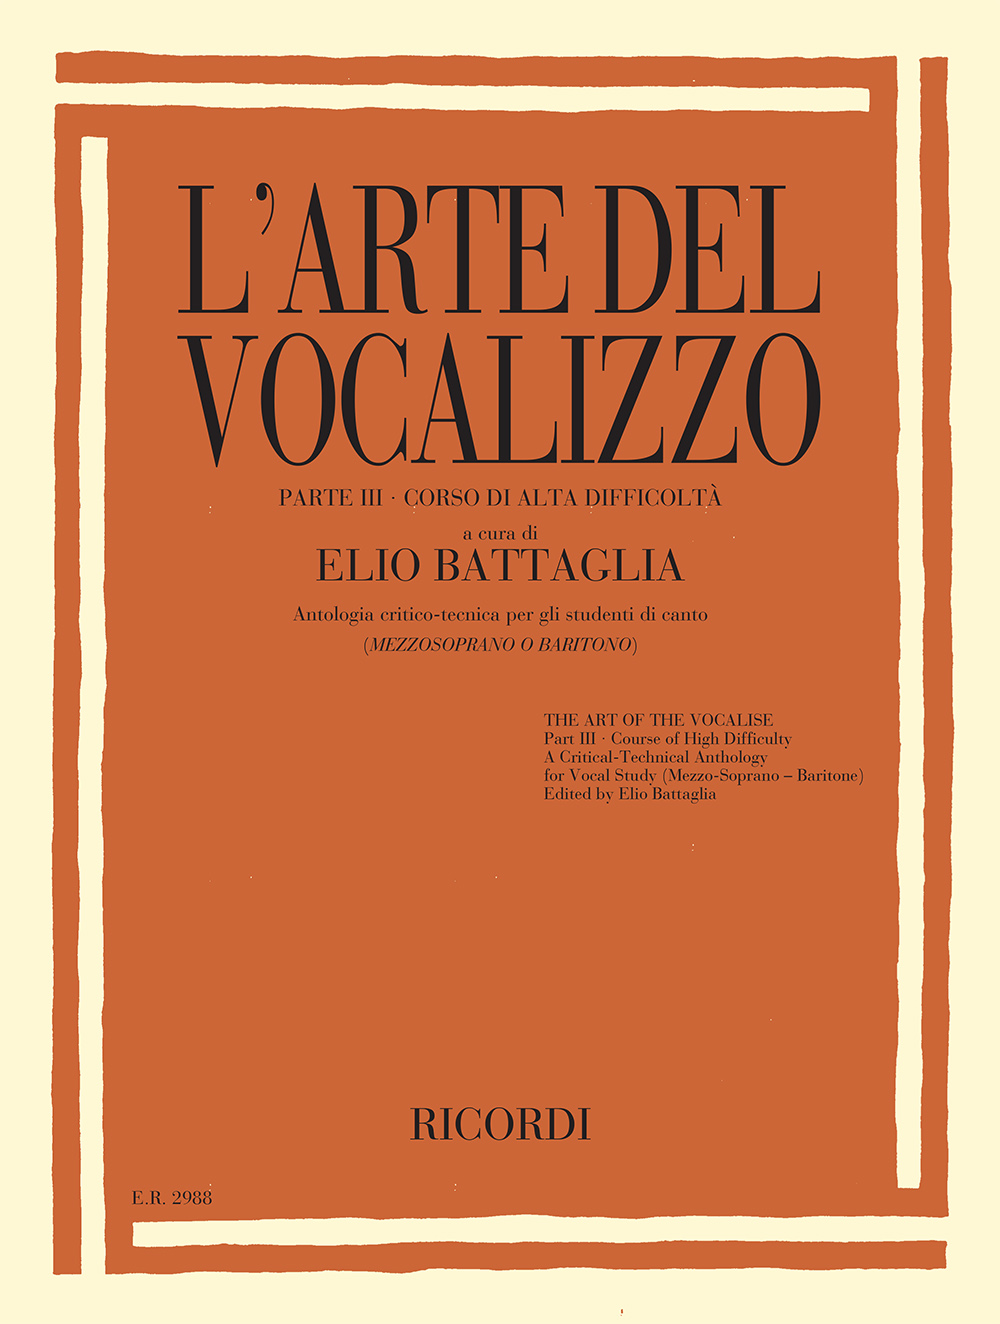 Elio Battaglia: L'Arte Del Vocalizzo (Mezzo- or Baritone) Part III: Medium Voice